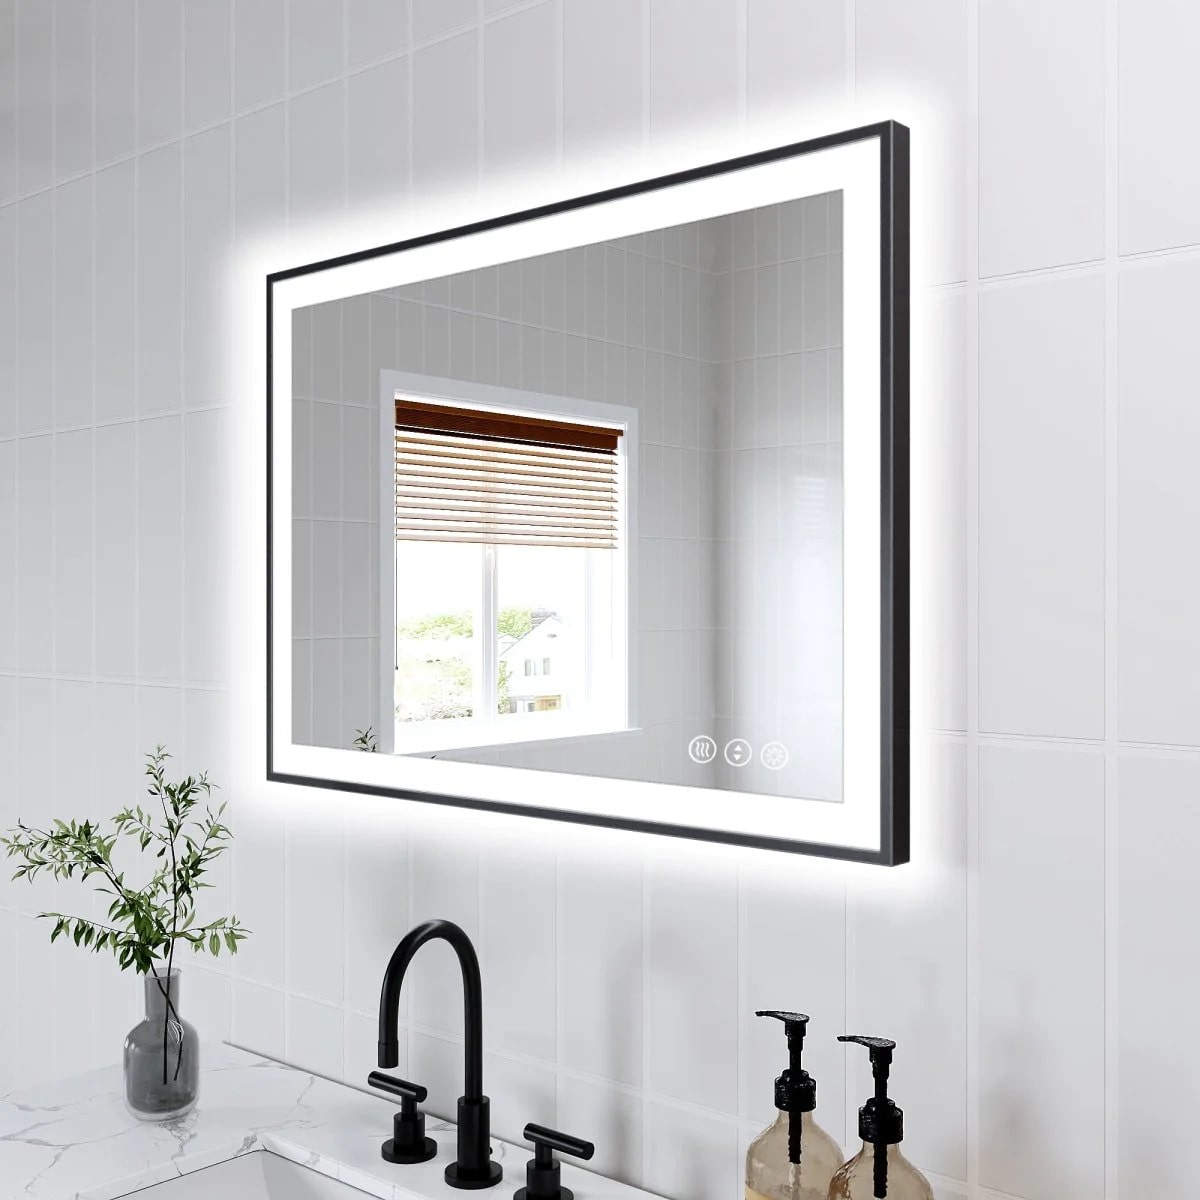 Apex-Noir 20"x 28" Framed LED Mirror